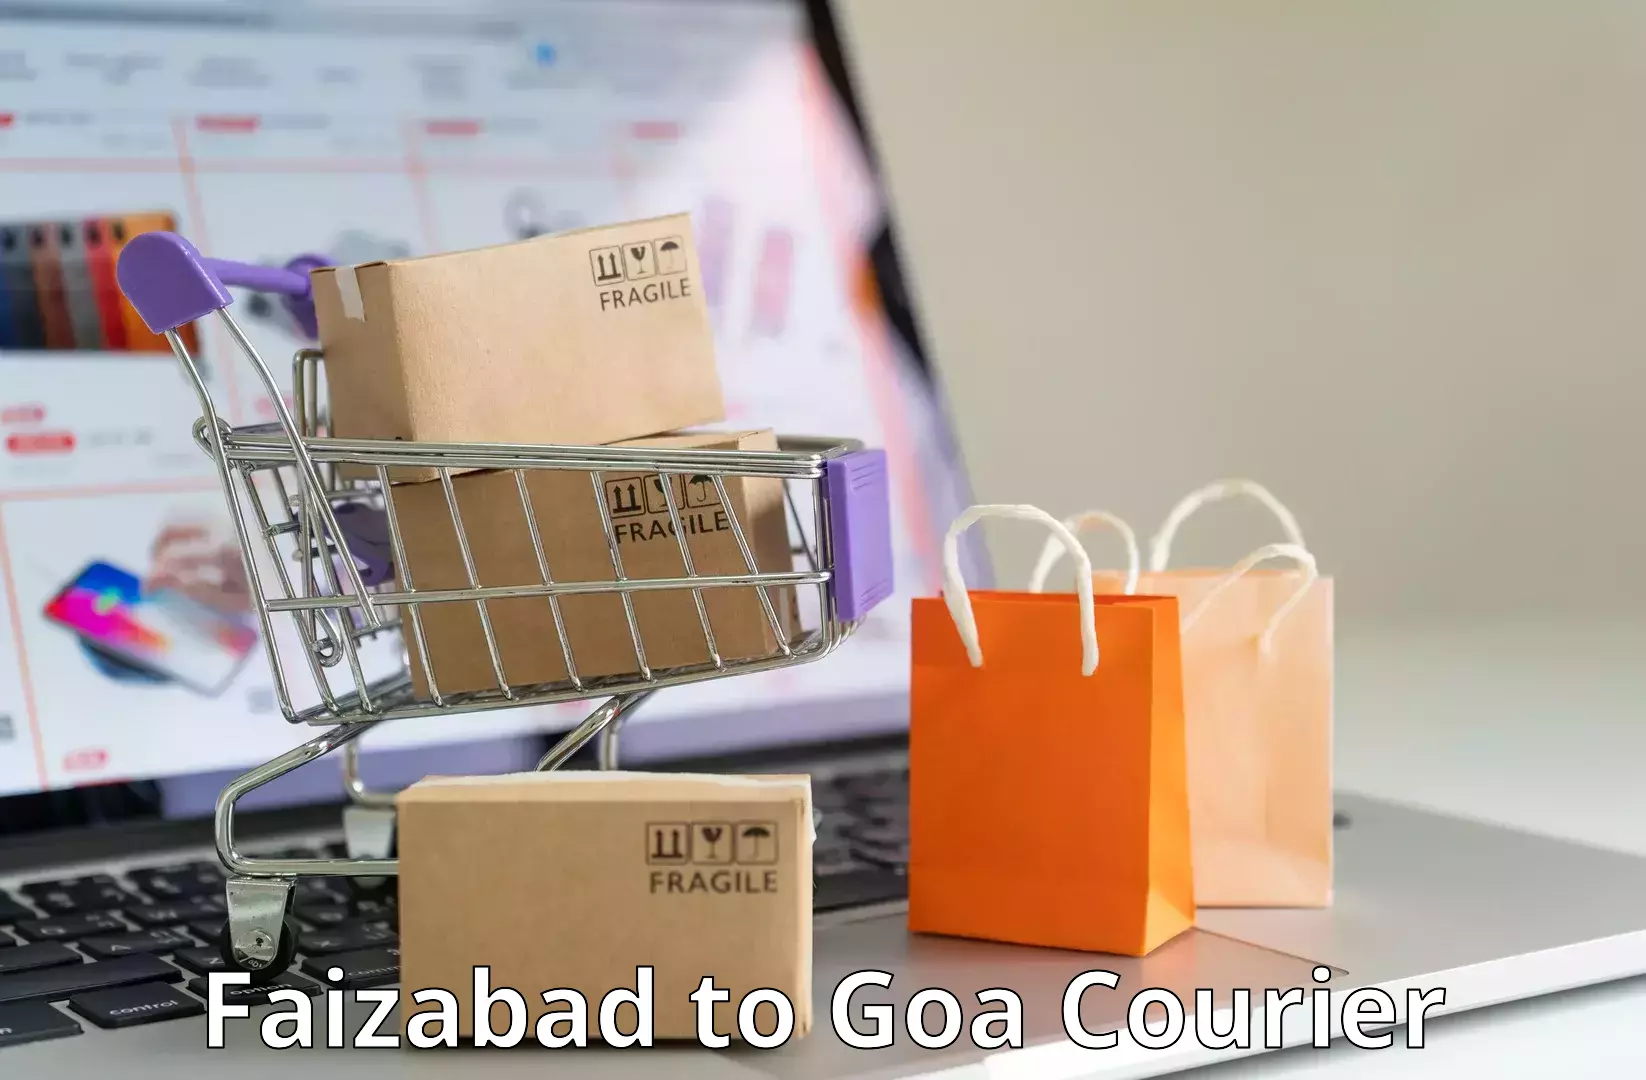 Modern courier technology Faizabad to IIT Goa